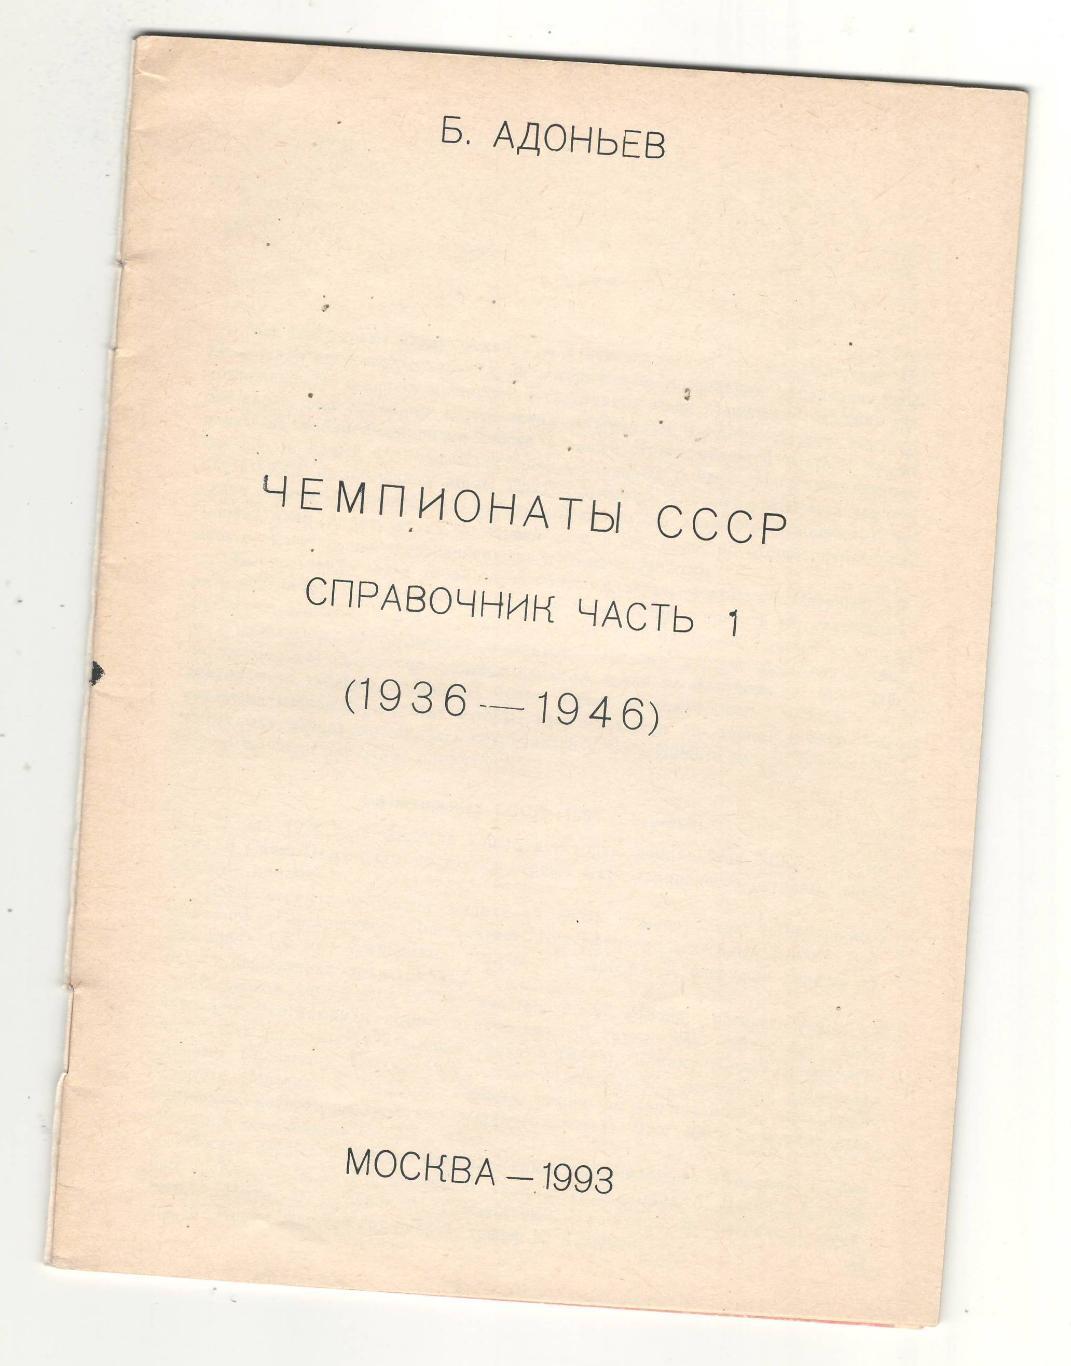 Чемпионаты СССР часть 1.1993 г 1